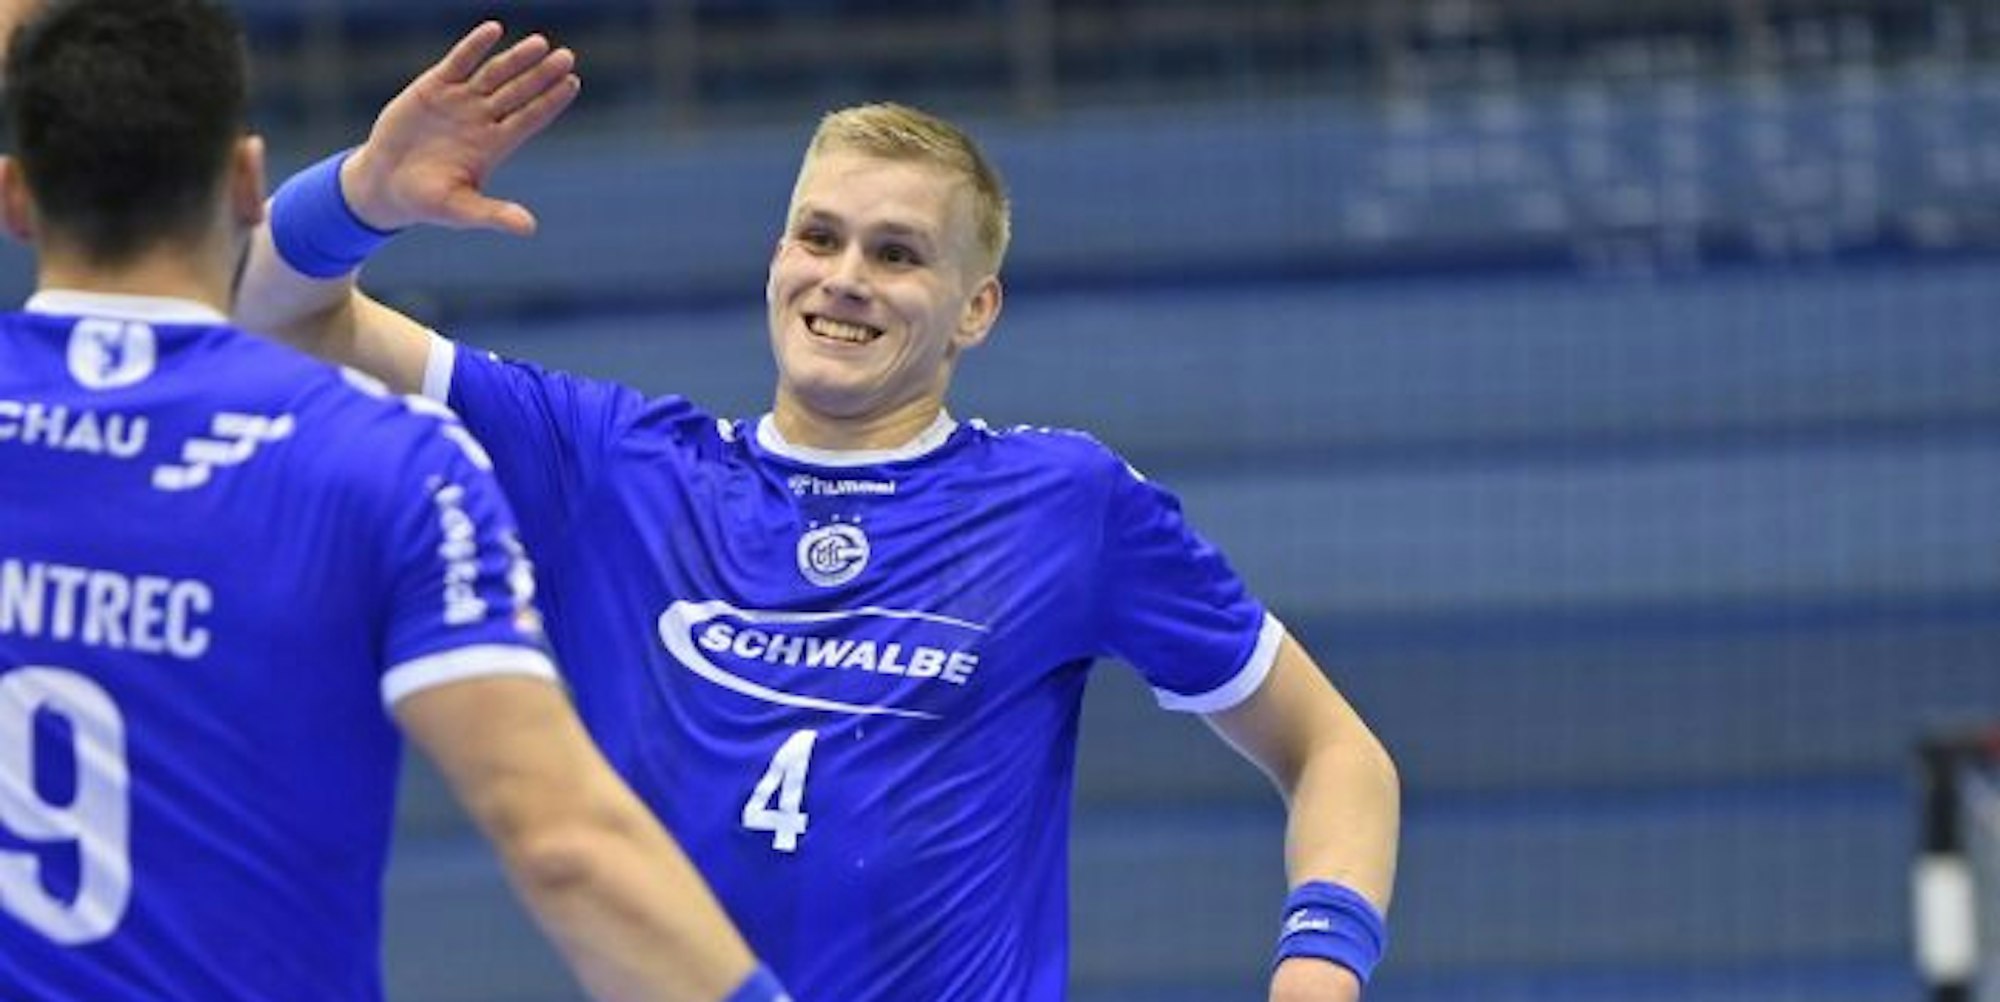 Selbst überrascht von seiner Entwicklung ist Ellidi Vidarsson (22), der jetzt mit Island bei der Weltmeisterschaft spielt.